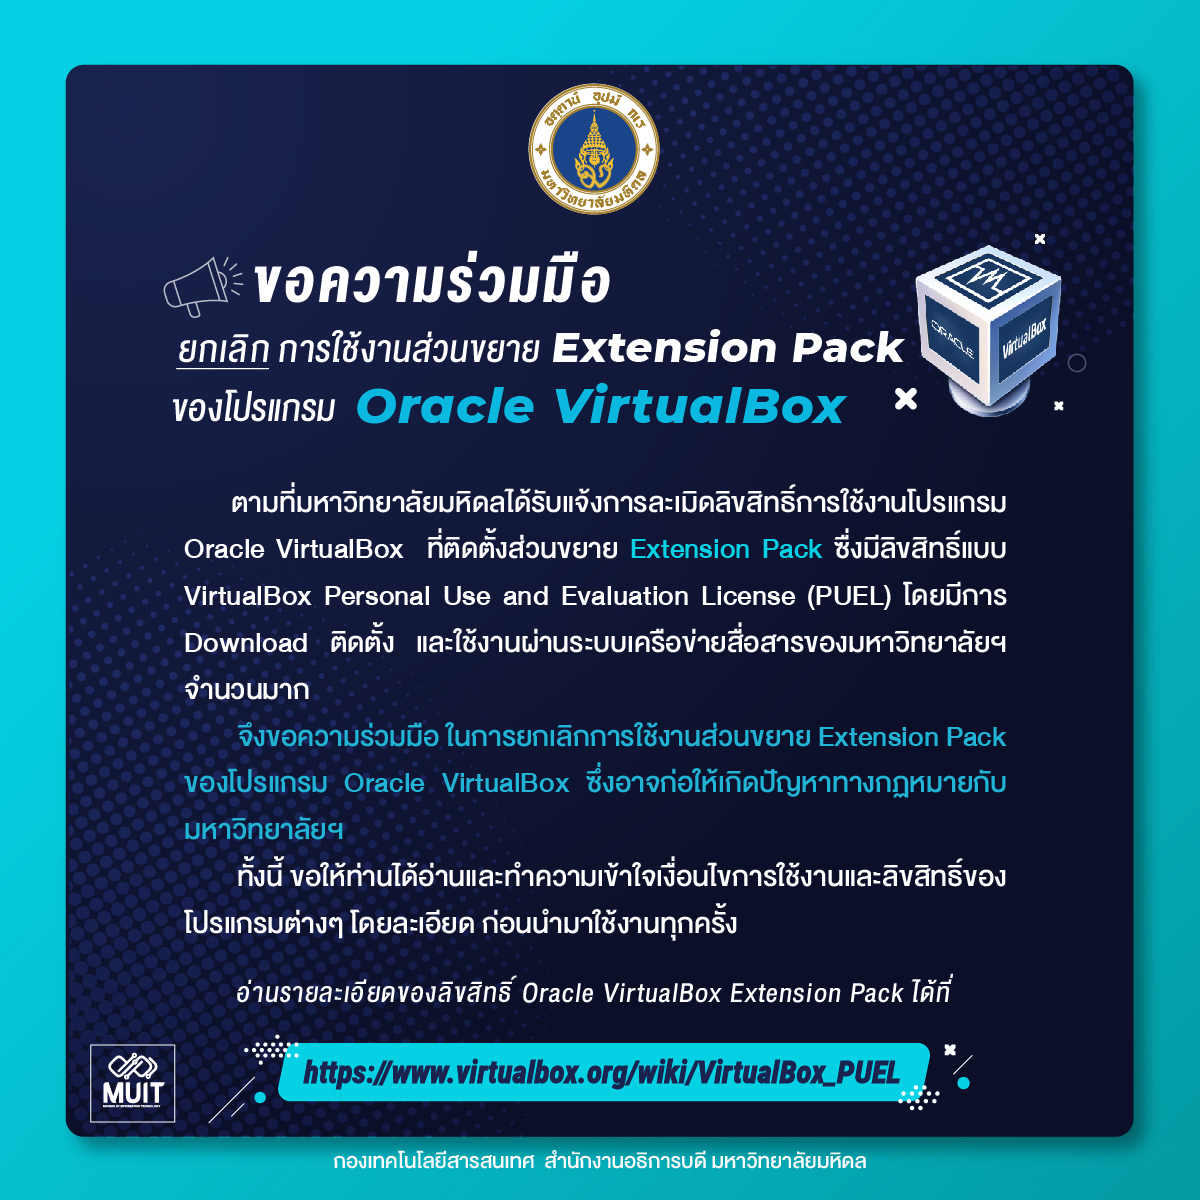 ขอความร่วมมือ⚠️ ยกเลิกการใช้งานส่วนขยาย Extension Pack ของโปรแกรม Oracle VirtualBox